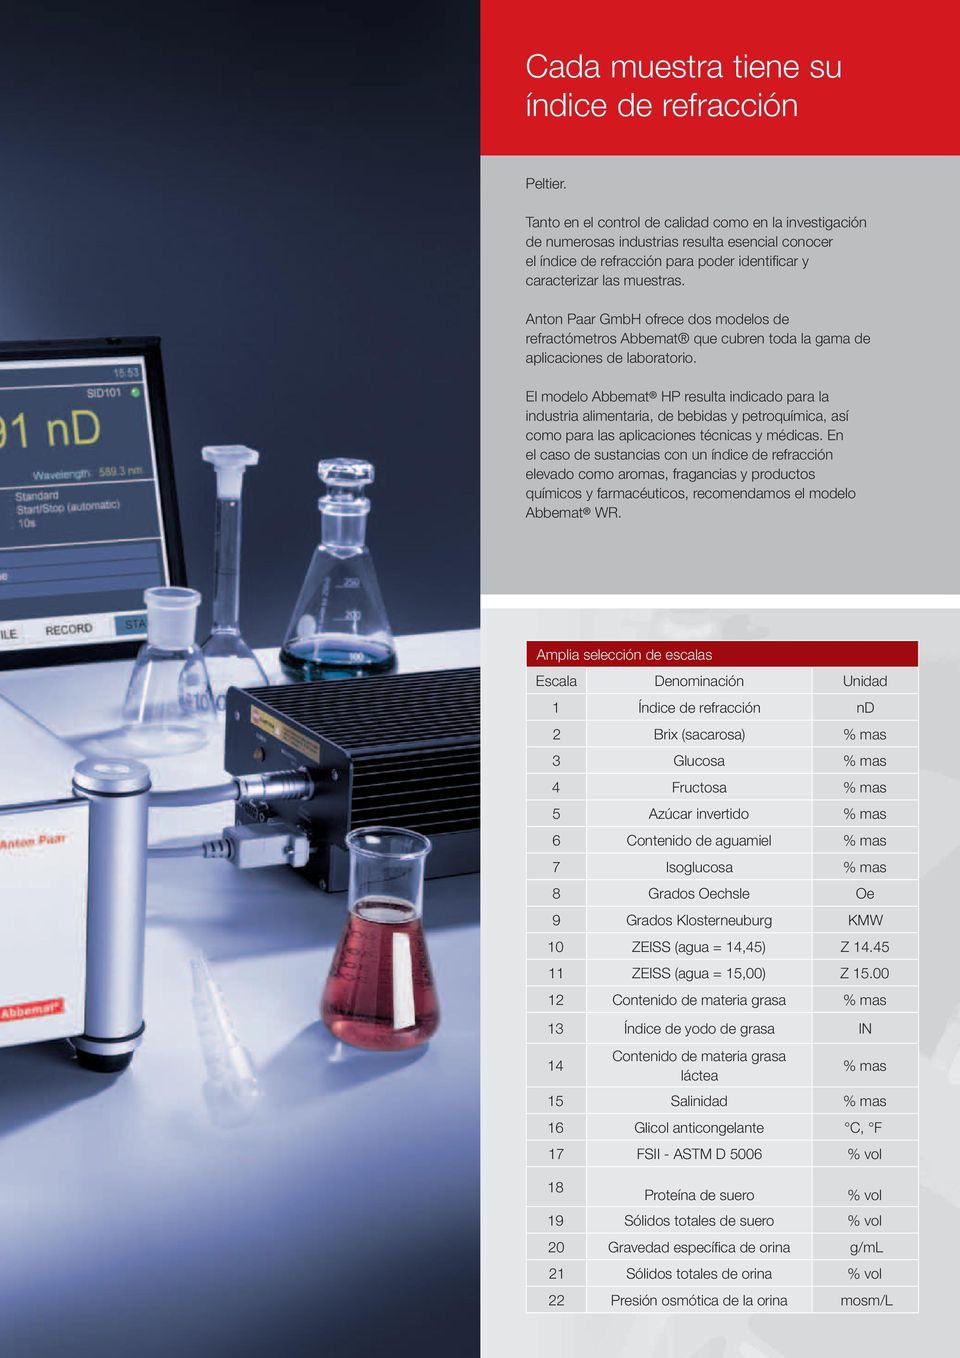 Anton Paar GmbH ofrece dos modelos de refractómetros Abbemat que cubren toda la gama de aplicaciones de laboratorio.